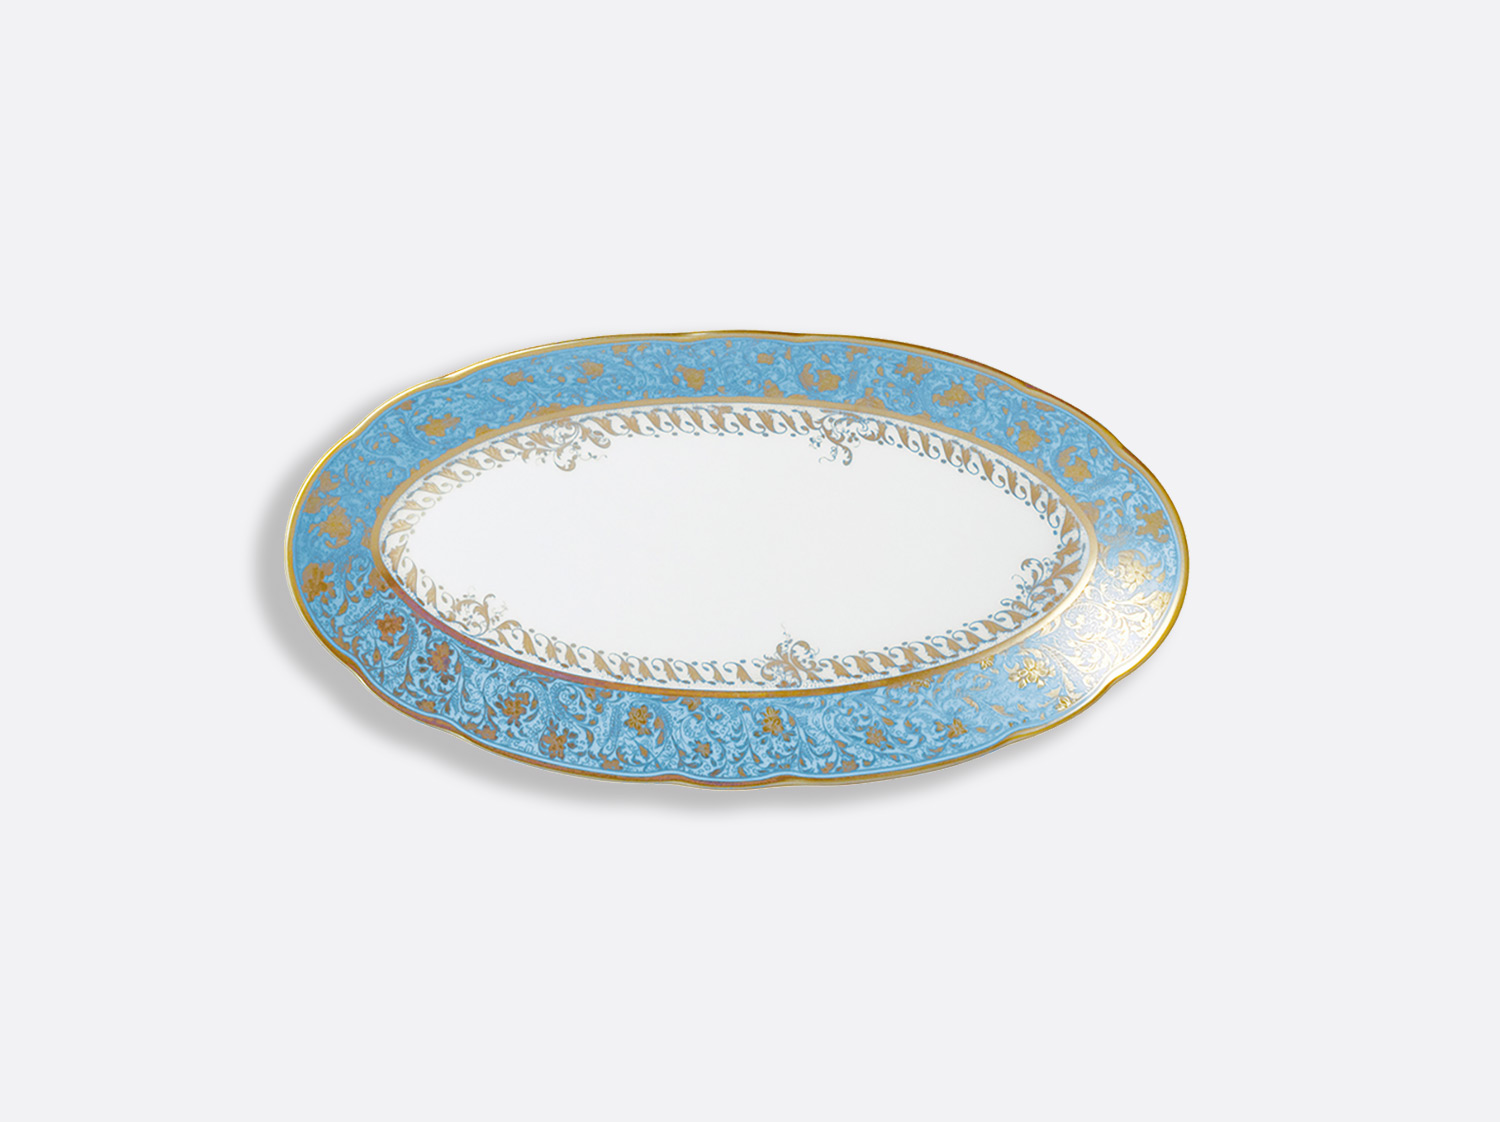 Ravier 21 x 15 cm en porcelaine de la collection Eden turquoise Bernardaud